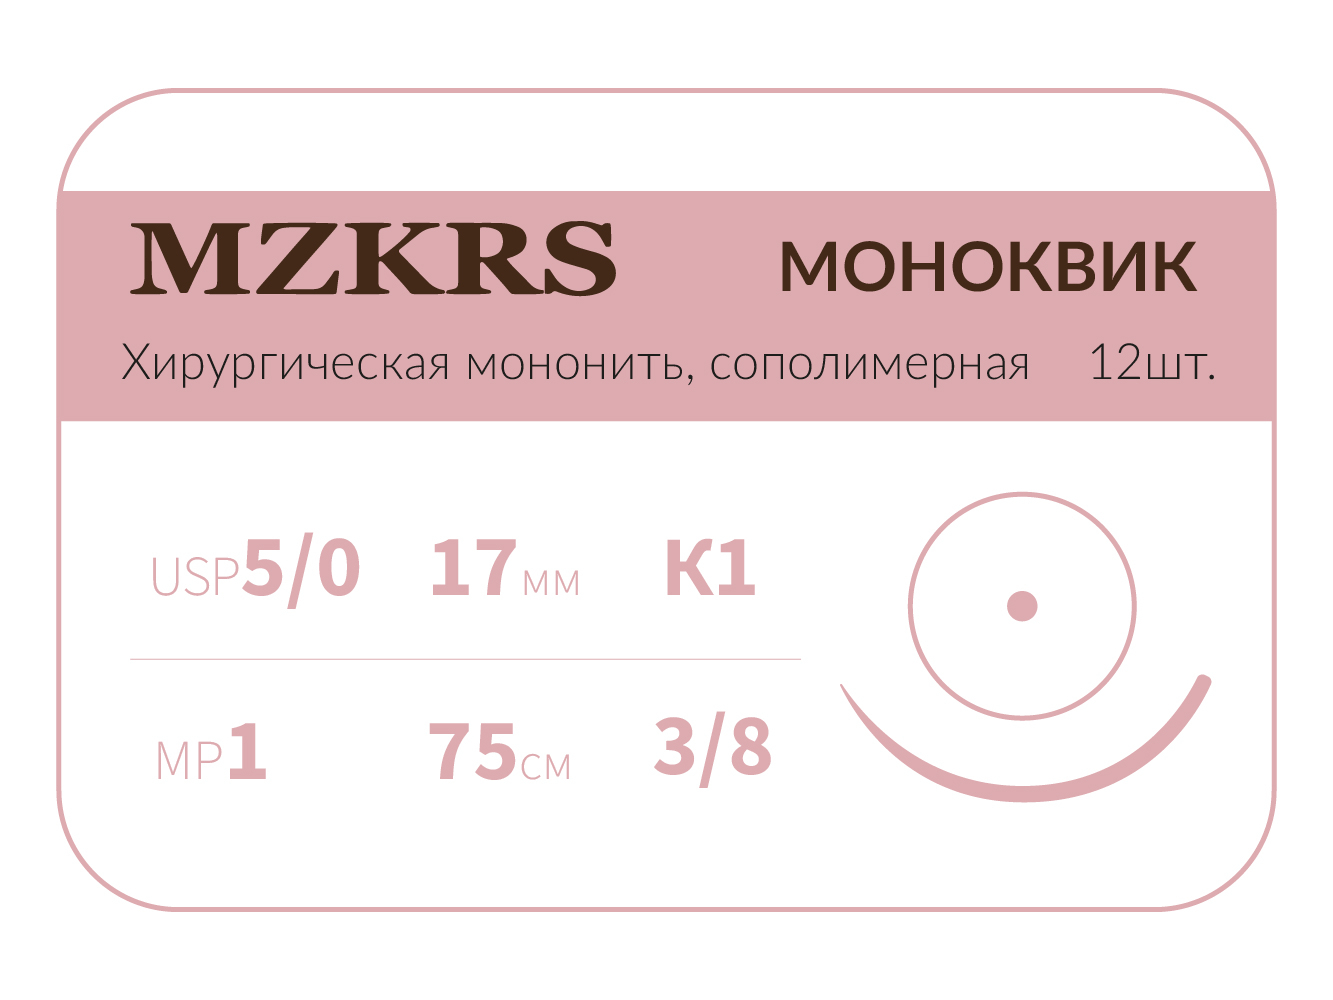 1738К1 Premium-5/0 (1)75 МОНК МОНОКВИК хирургическая мононить, сополимерная, MZKRS (Россия)